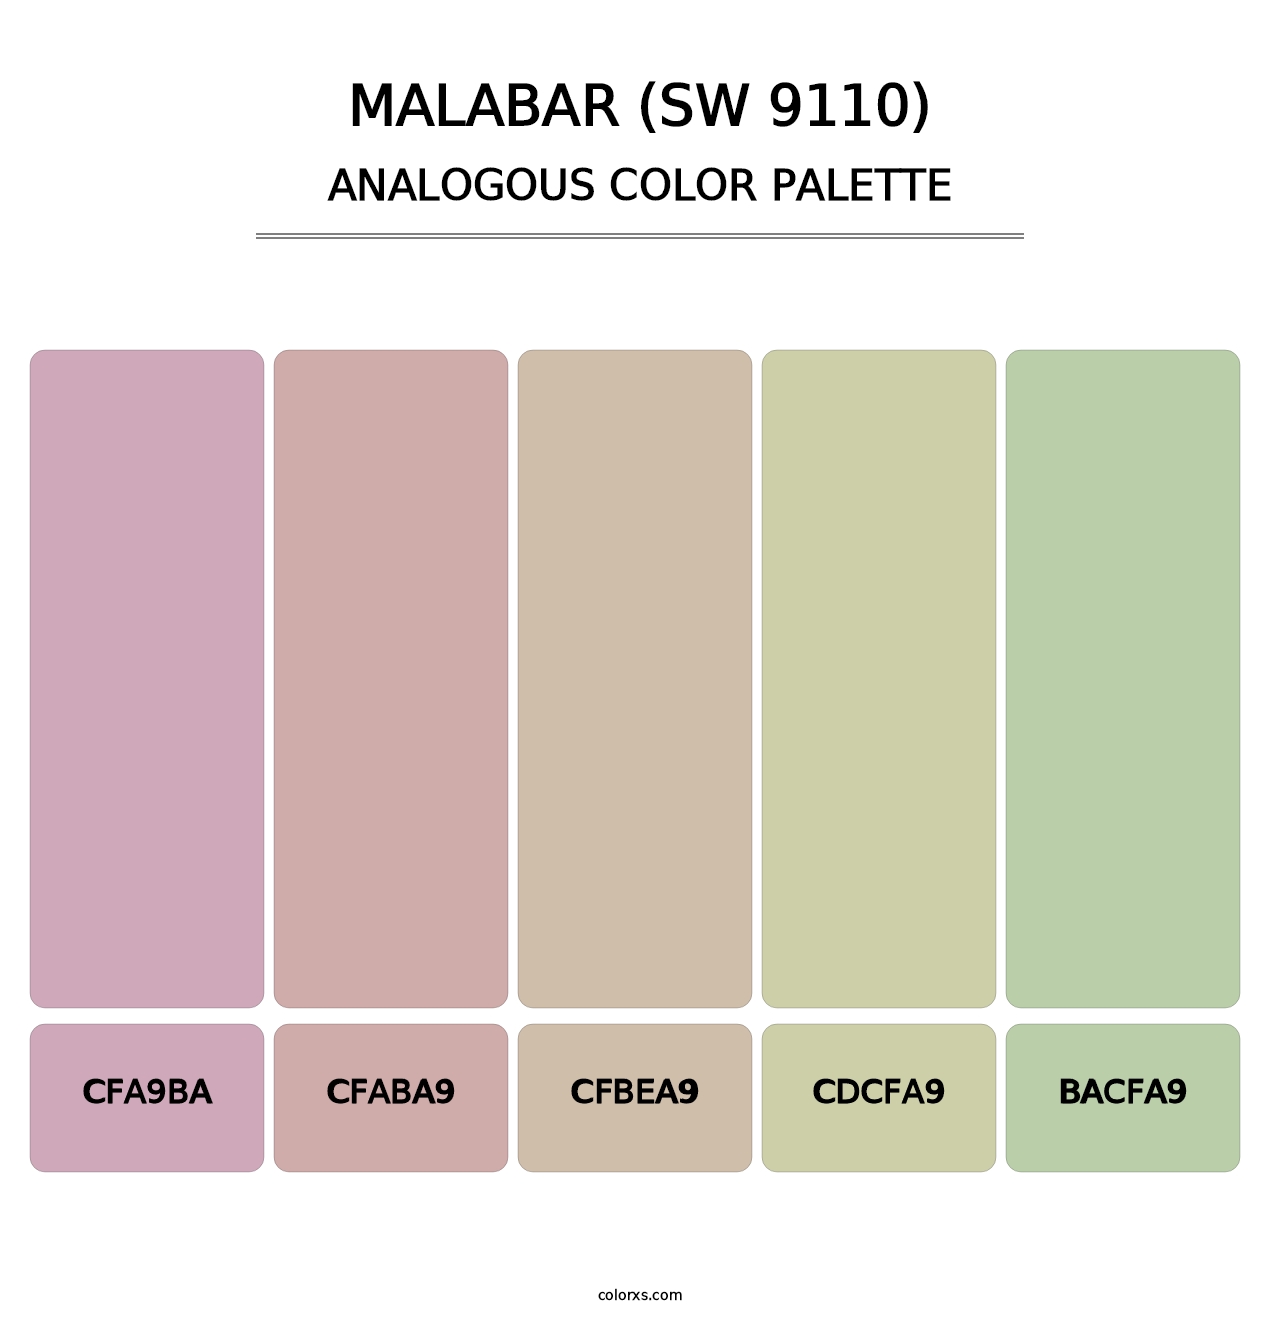 Malabar (SW 9110) - Analogous Color Palette